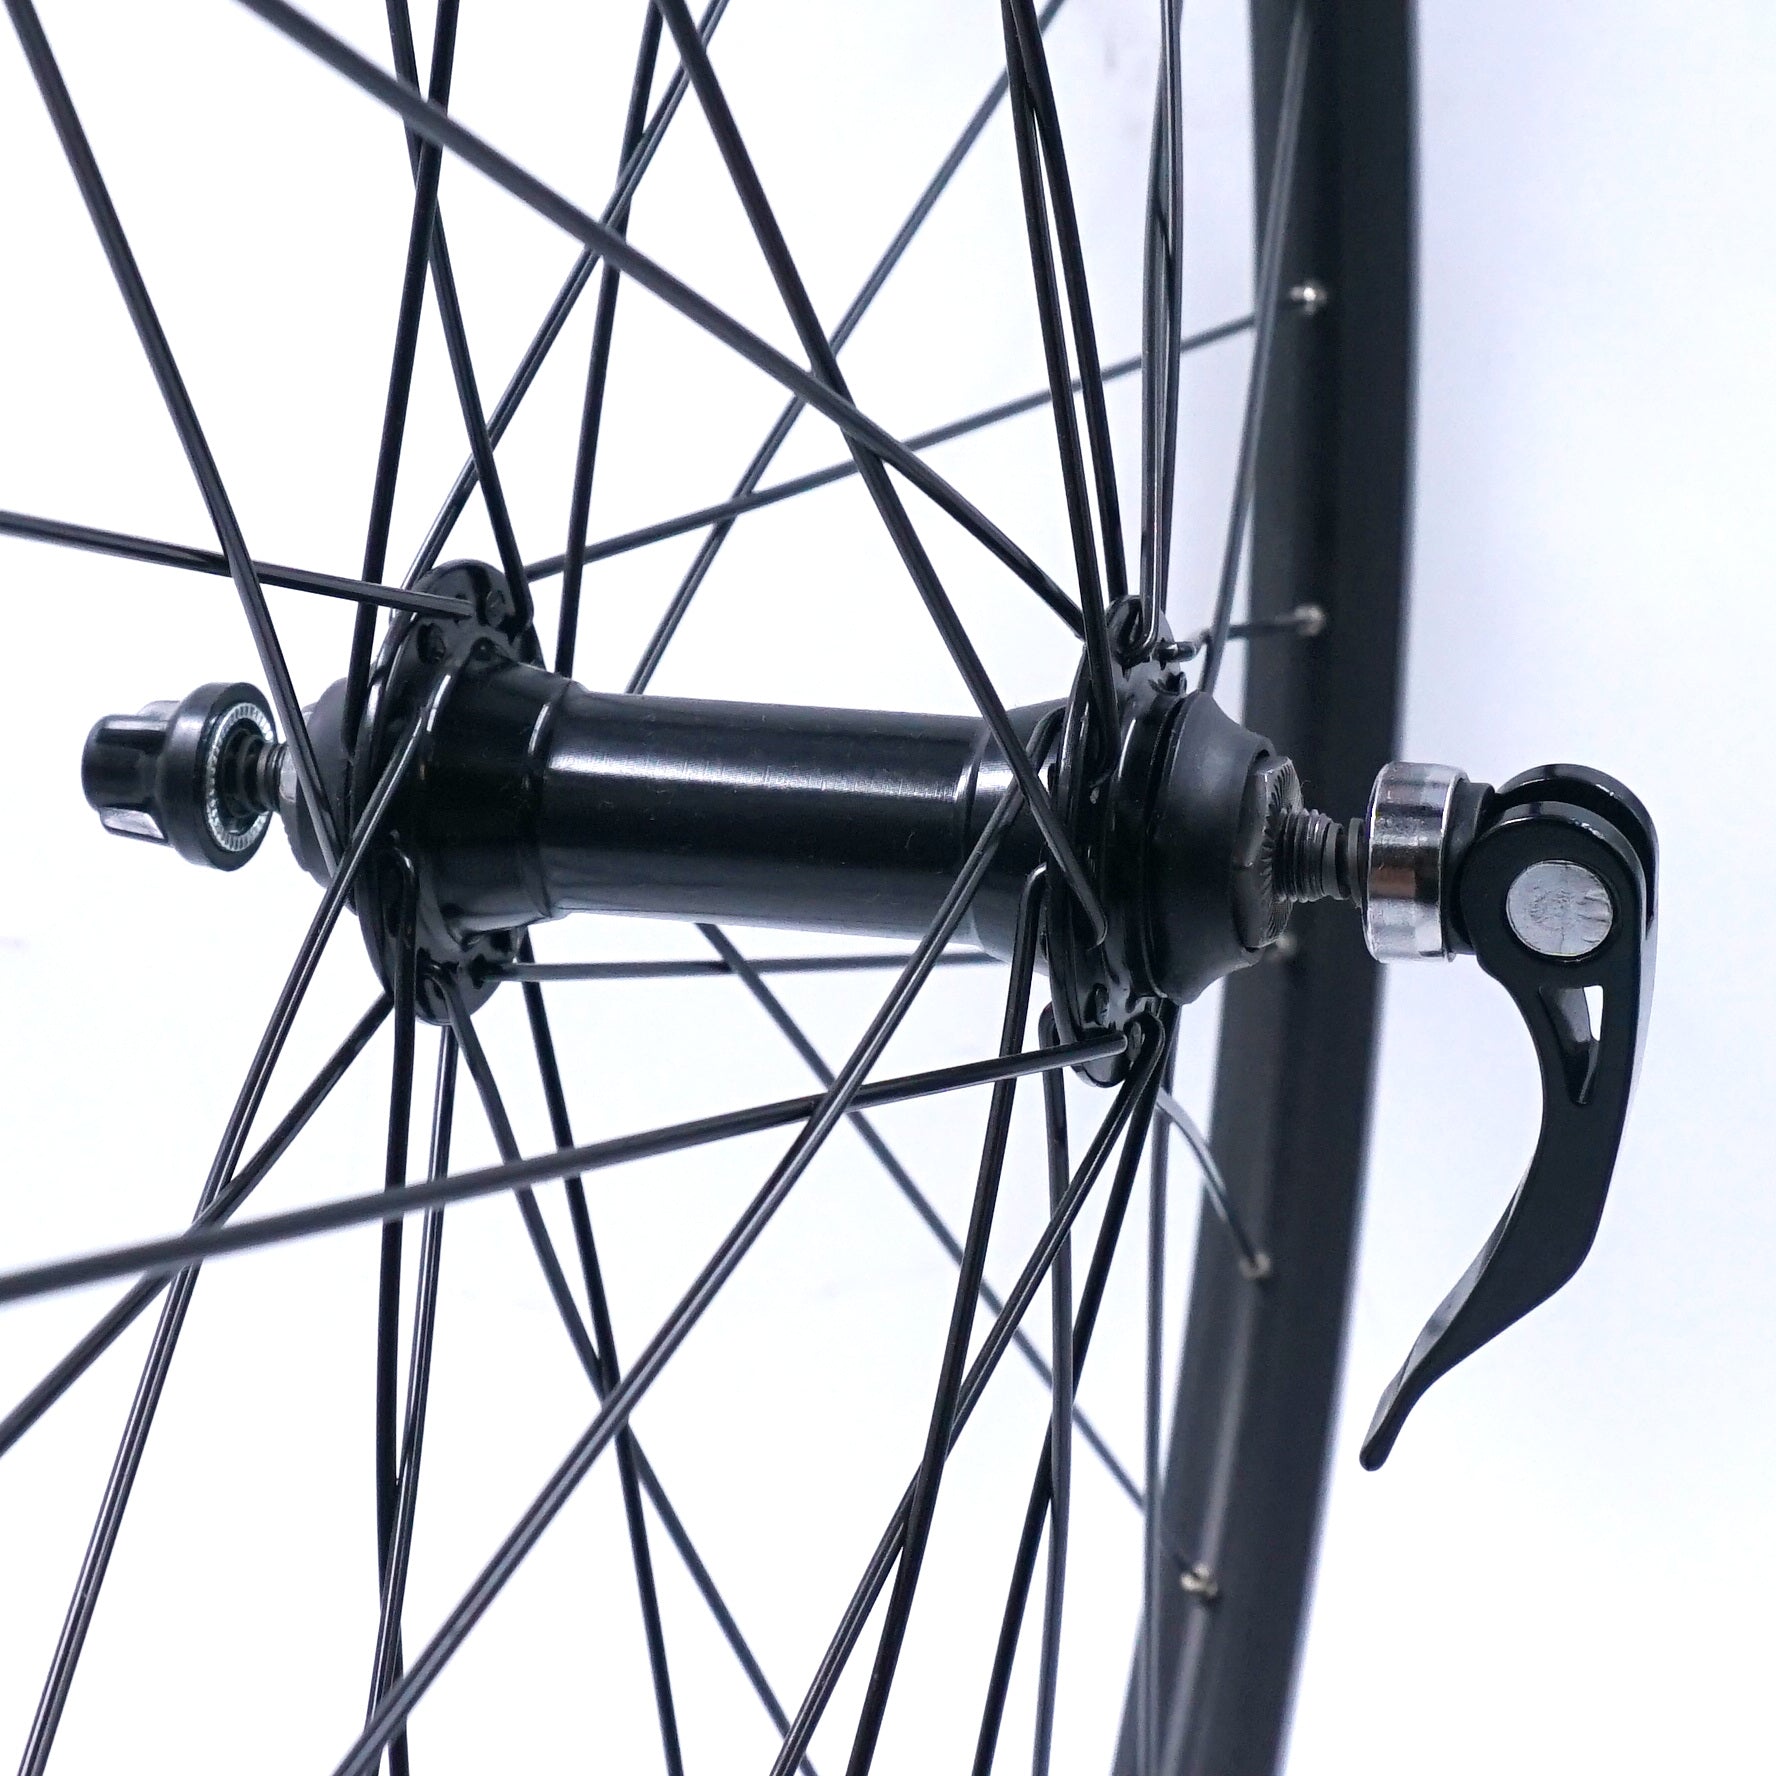 26" Sta-Tru Black Front QR Bike Wheel - The Bikesmiths